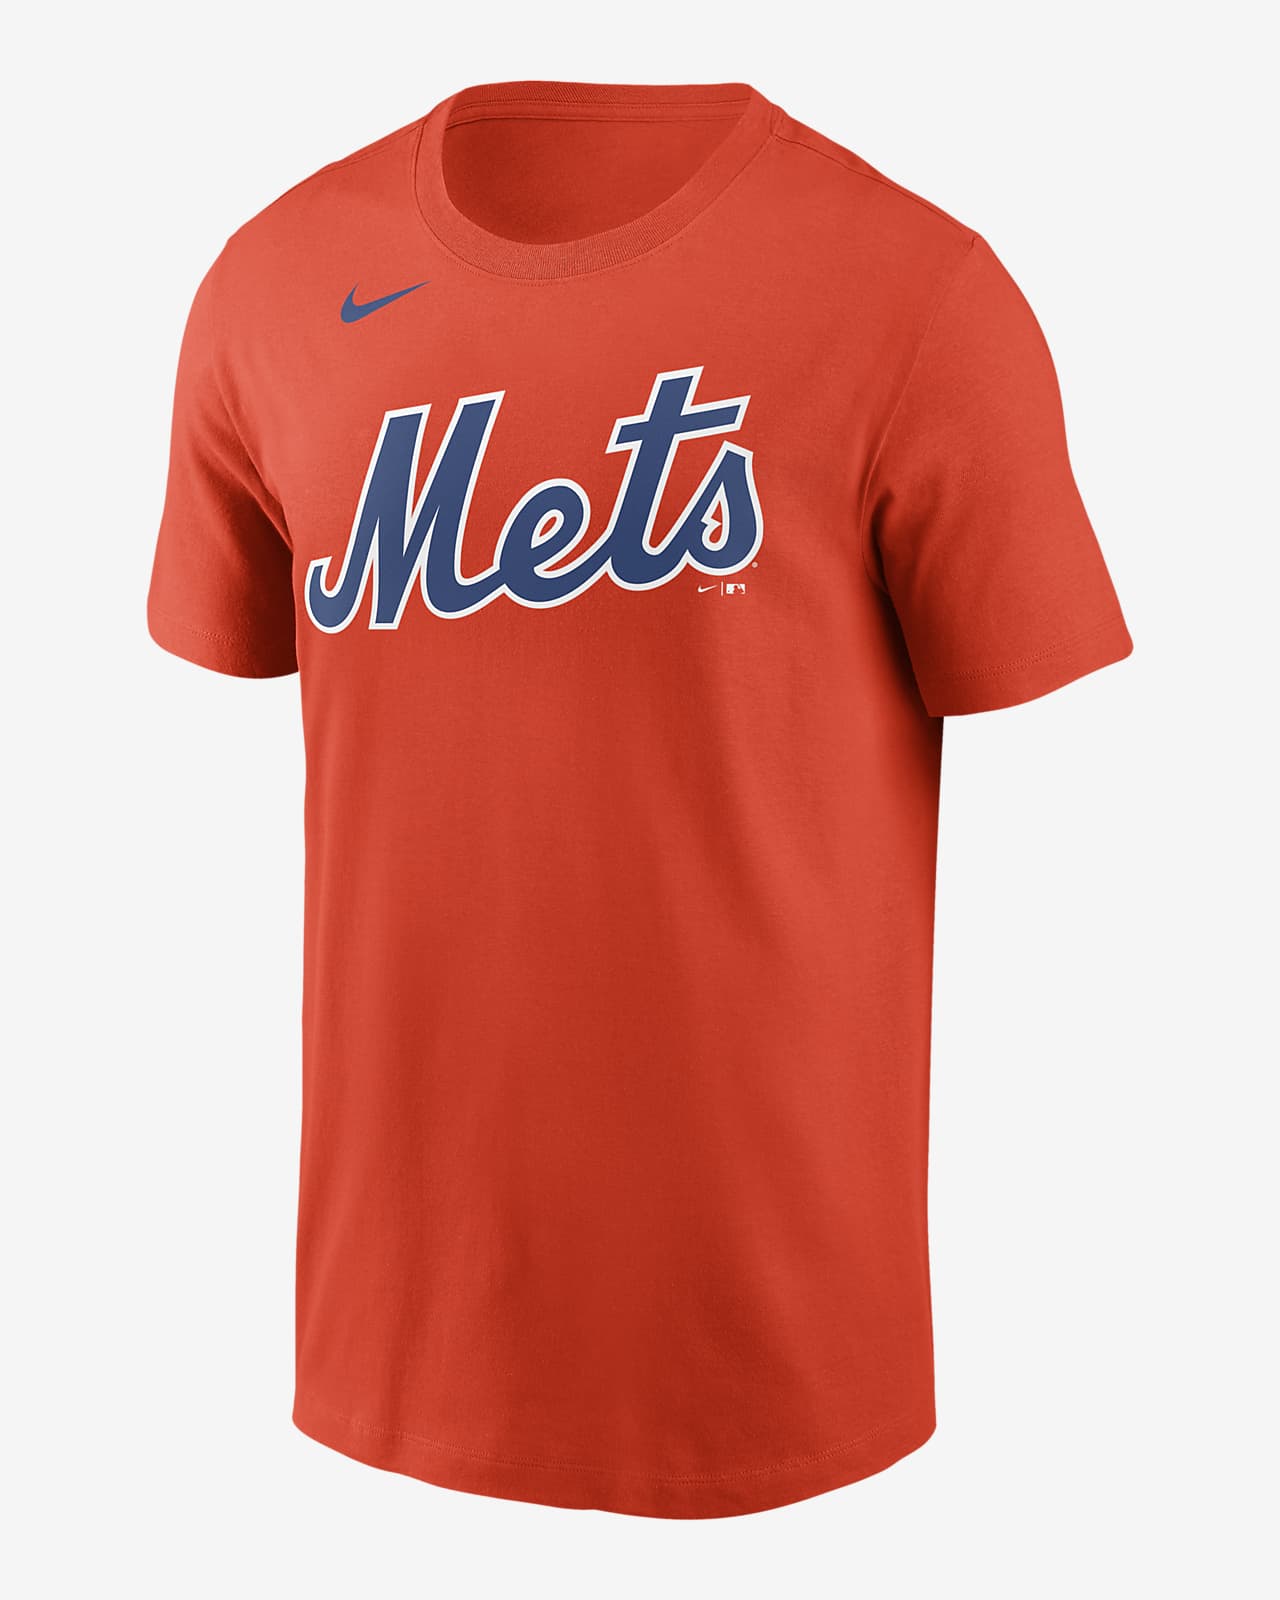 Shop the best NY Mets gear on Fanatics: Jerseys, hats, more